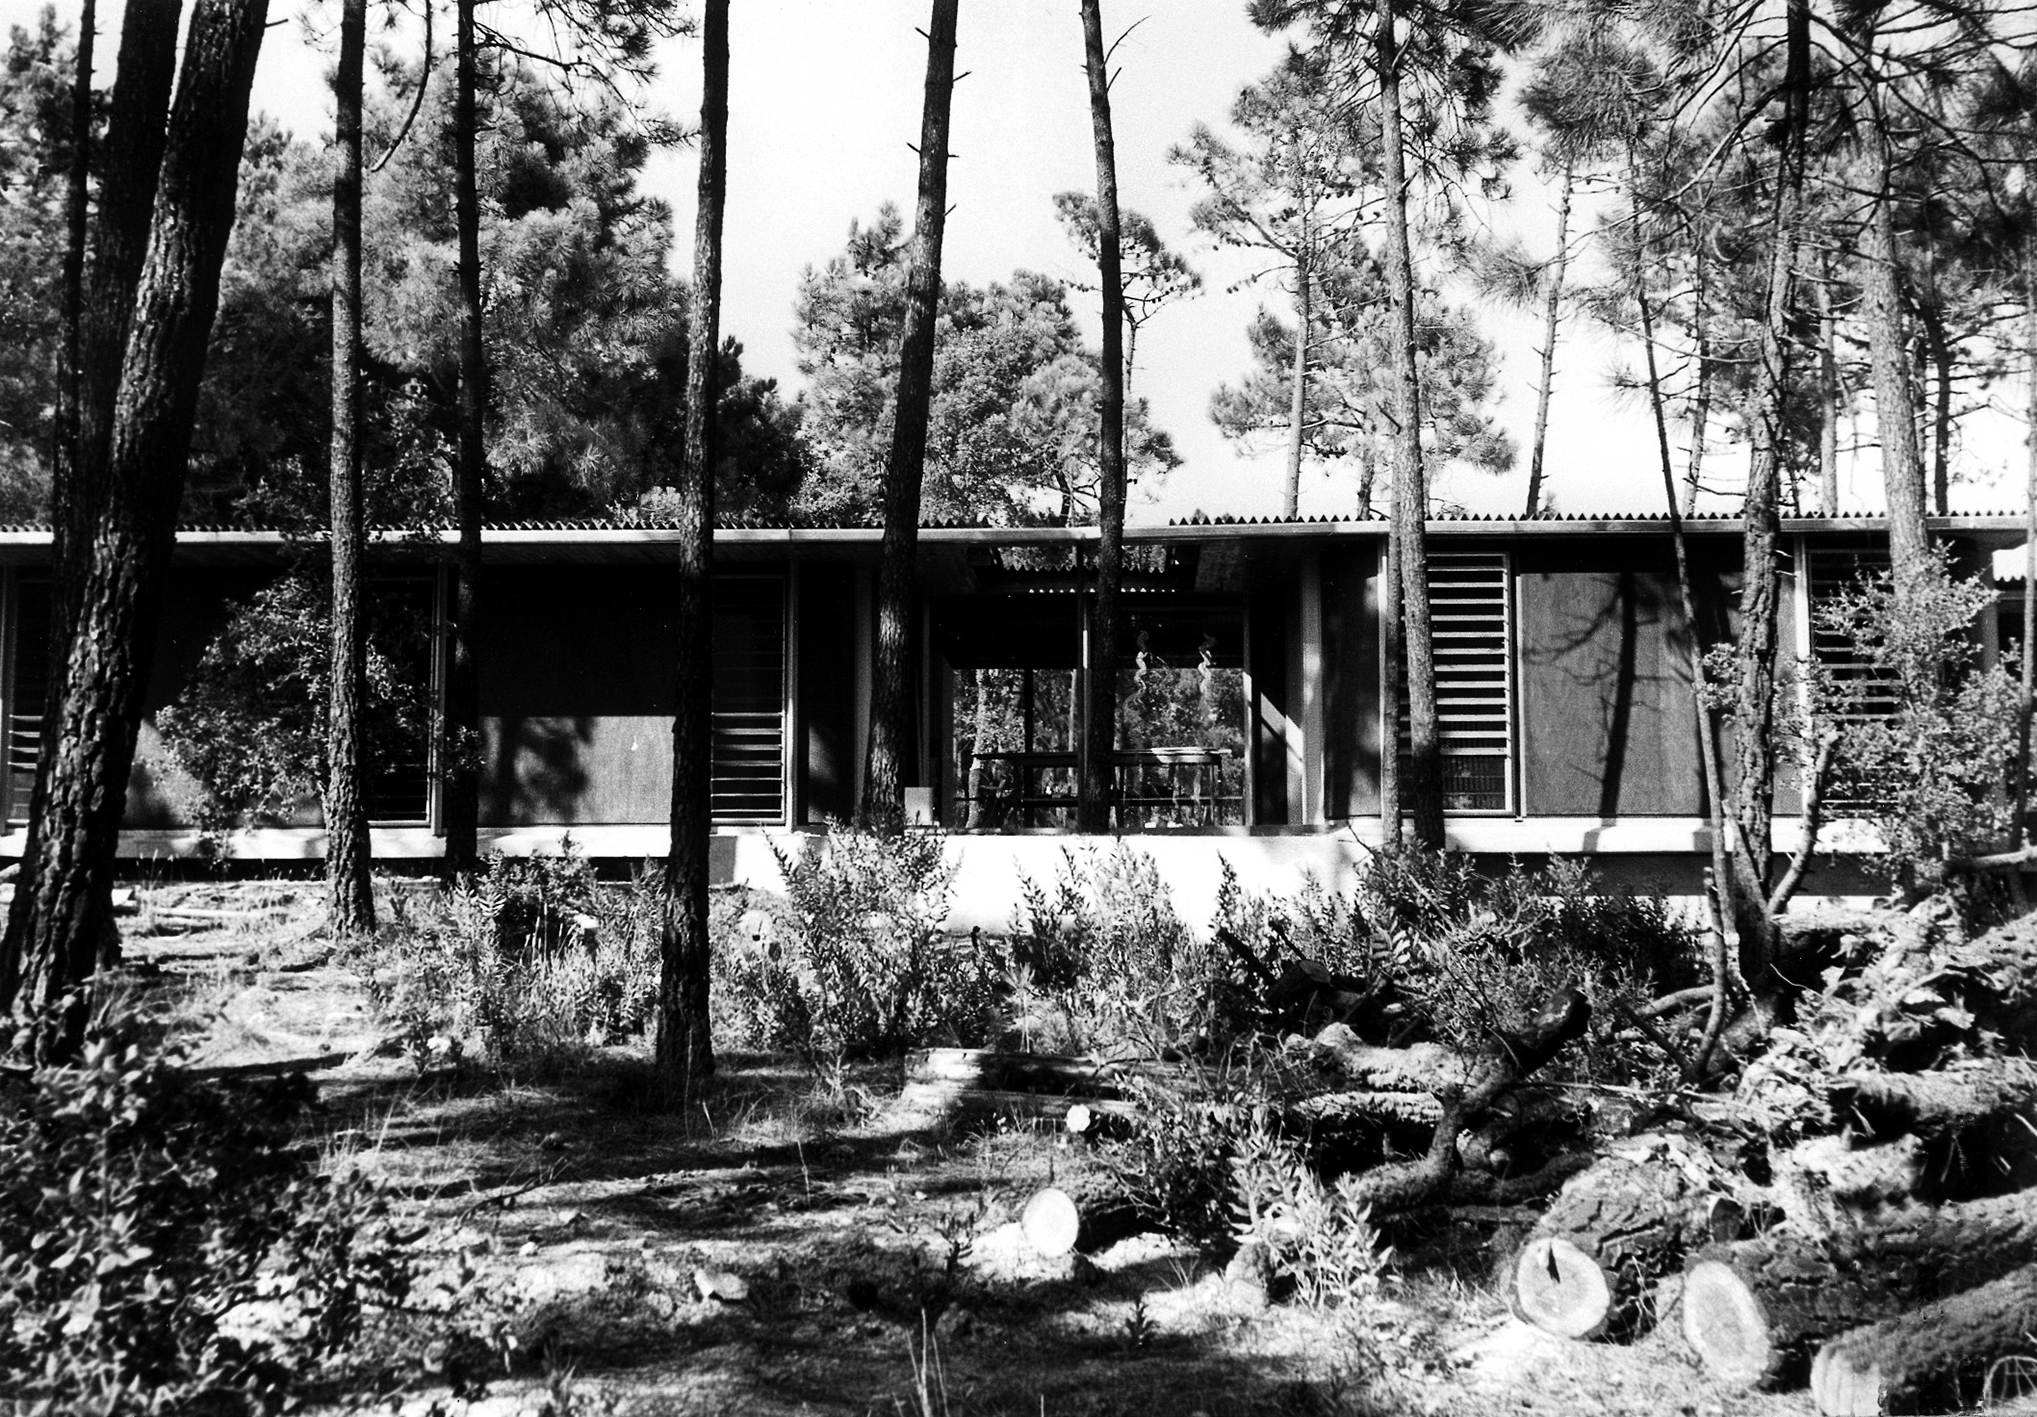 Villa Seynave, Domaine de Beauvallon, Grimaud, 1961 (Jean Prouvé, with architects N. Hutchison, J. Parente, M. Sauzet, J. Vilfour).